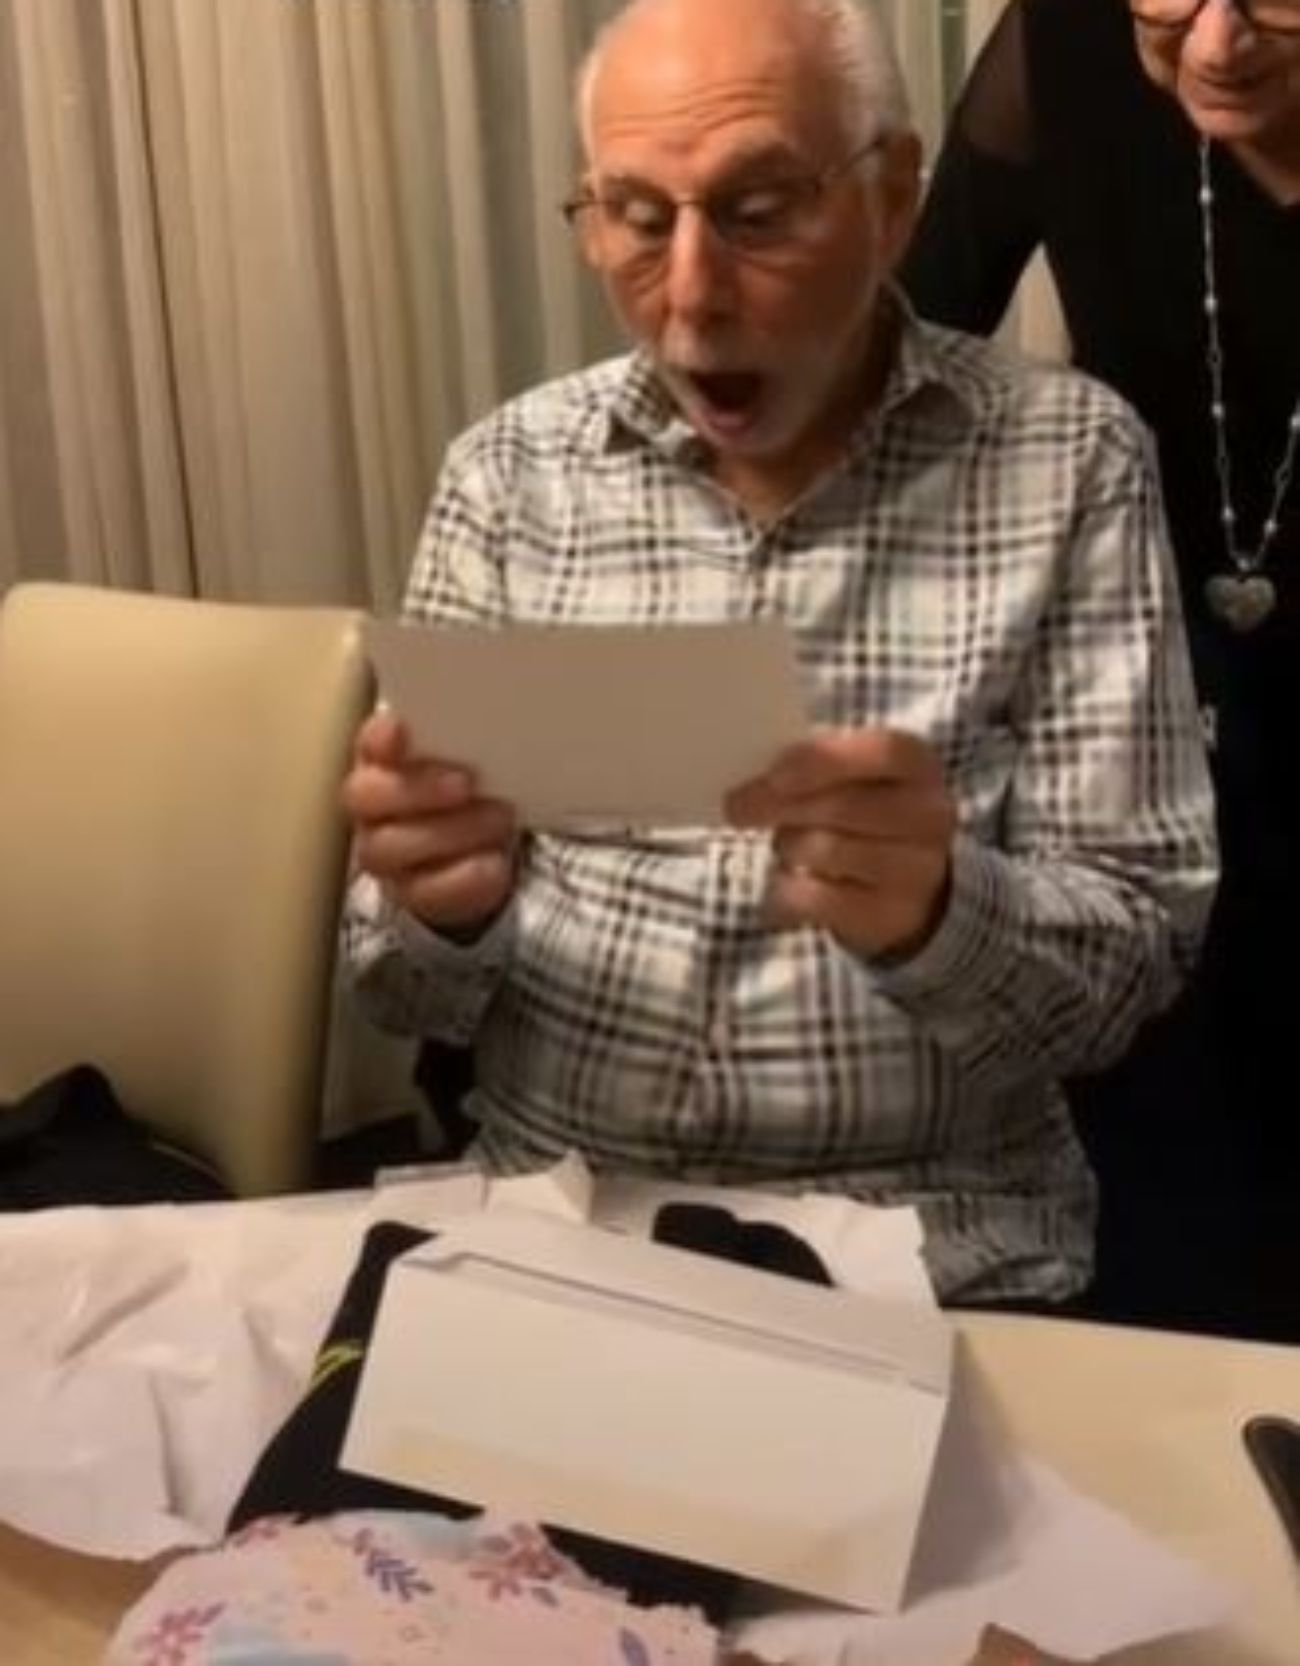 VÍDEO - La emoción de un hombre de 80 años al recibir entradas para Dua Lipa: "¿Son de verdad?"